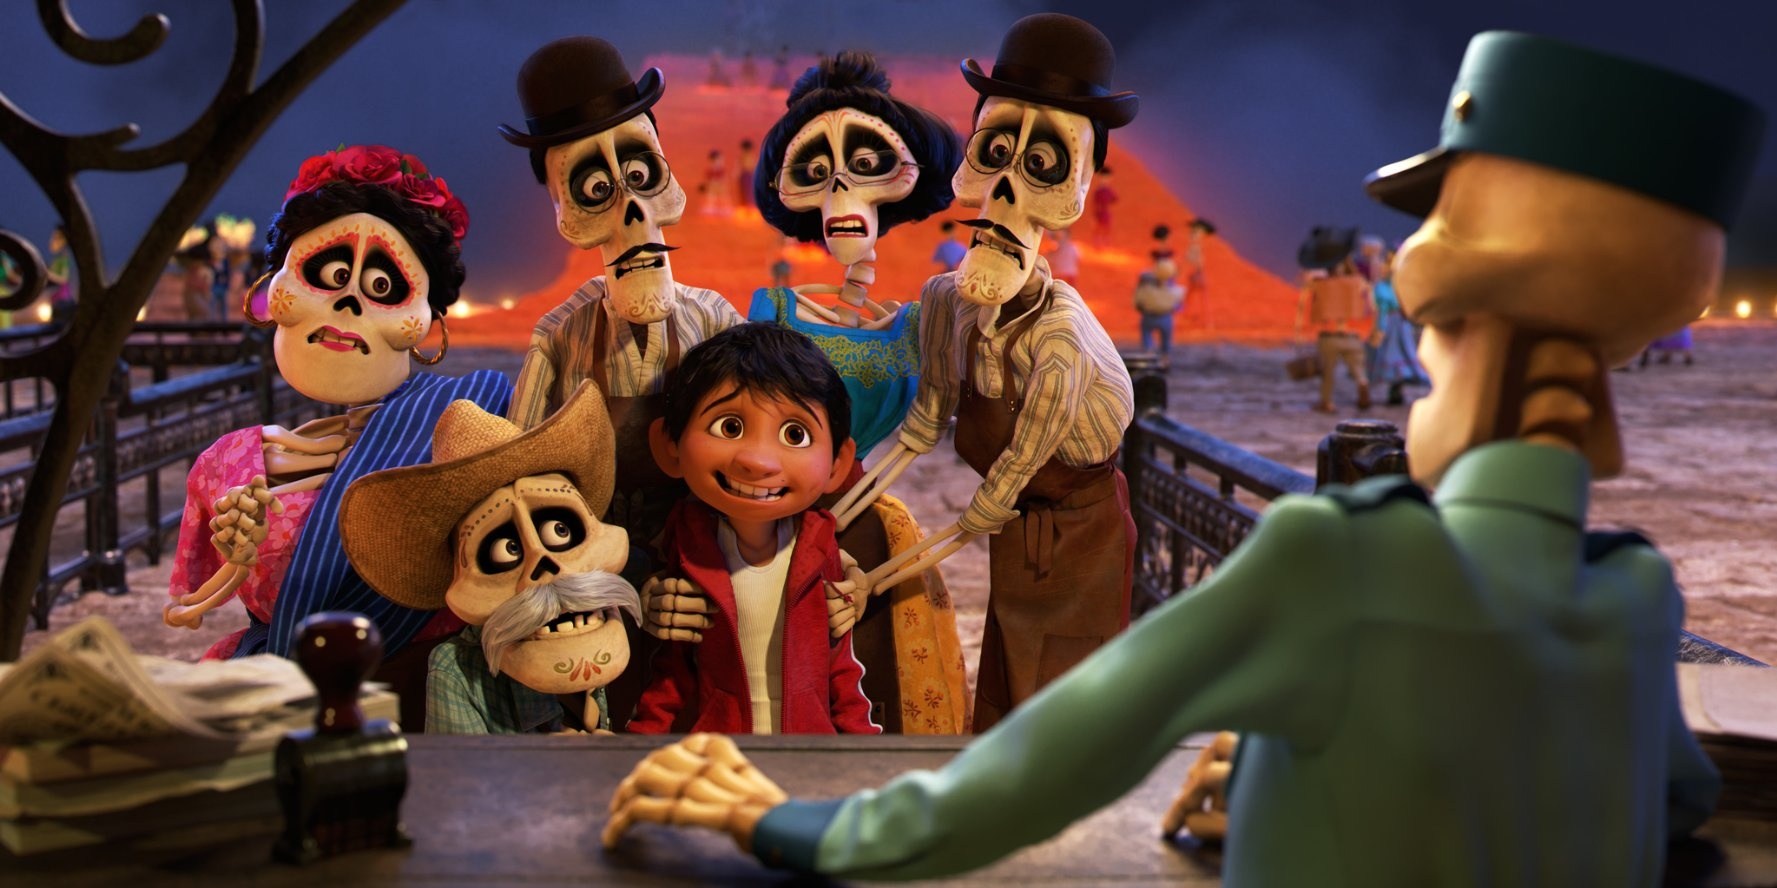 皮克斯新动画背景为什么要设定在墨西哥亡灵节